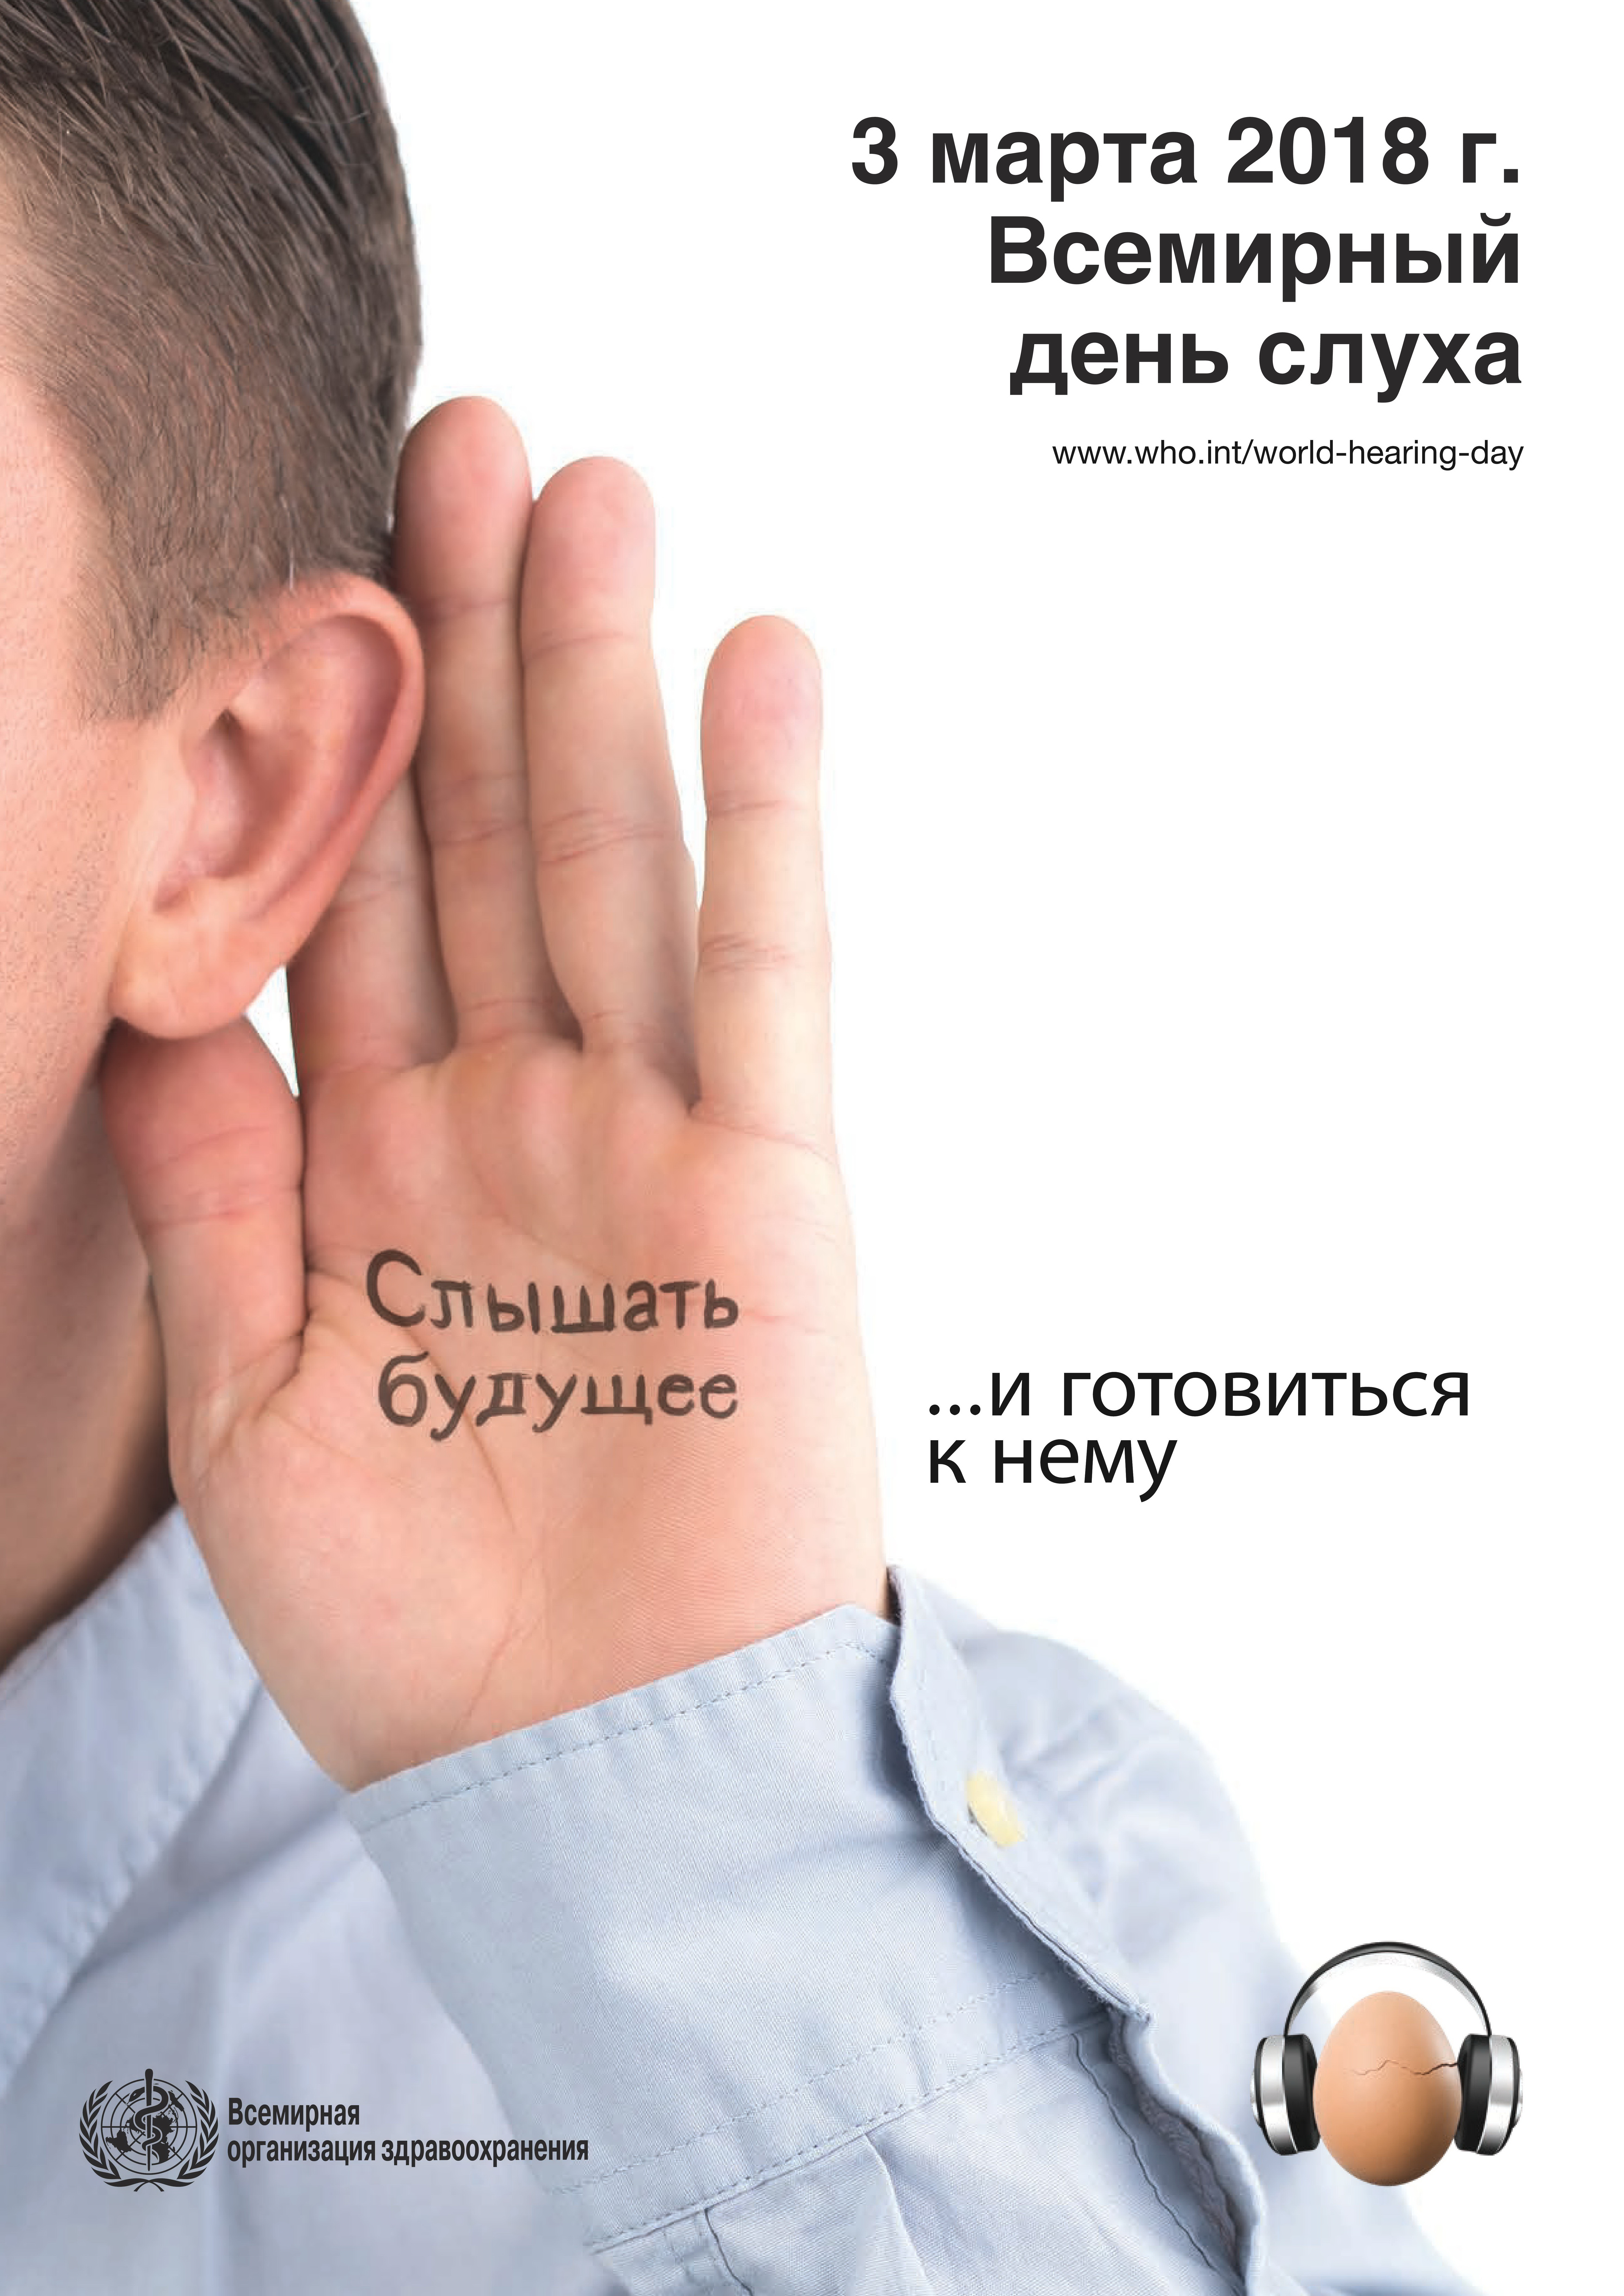 Международный день здоровья уха и слуха. Всемирный день слуха. Всемирный день уха и слуха.